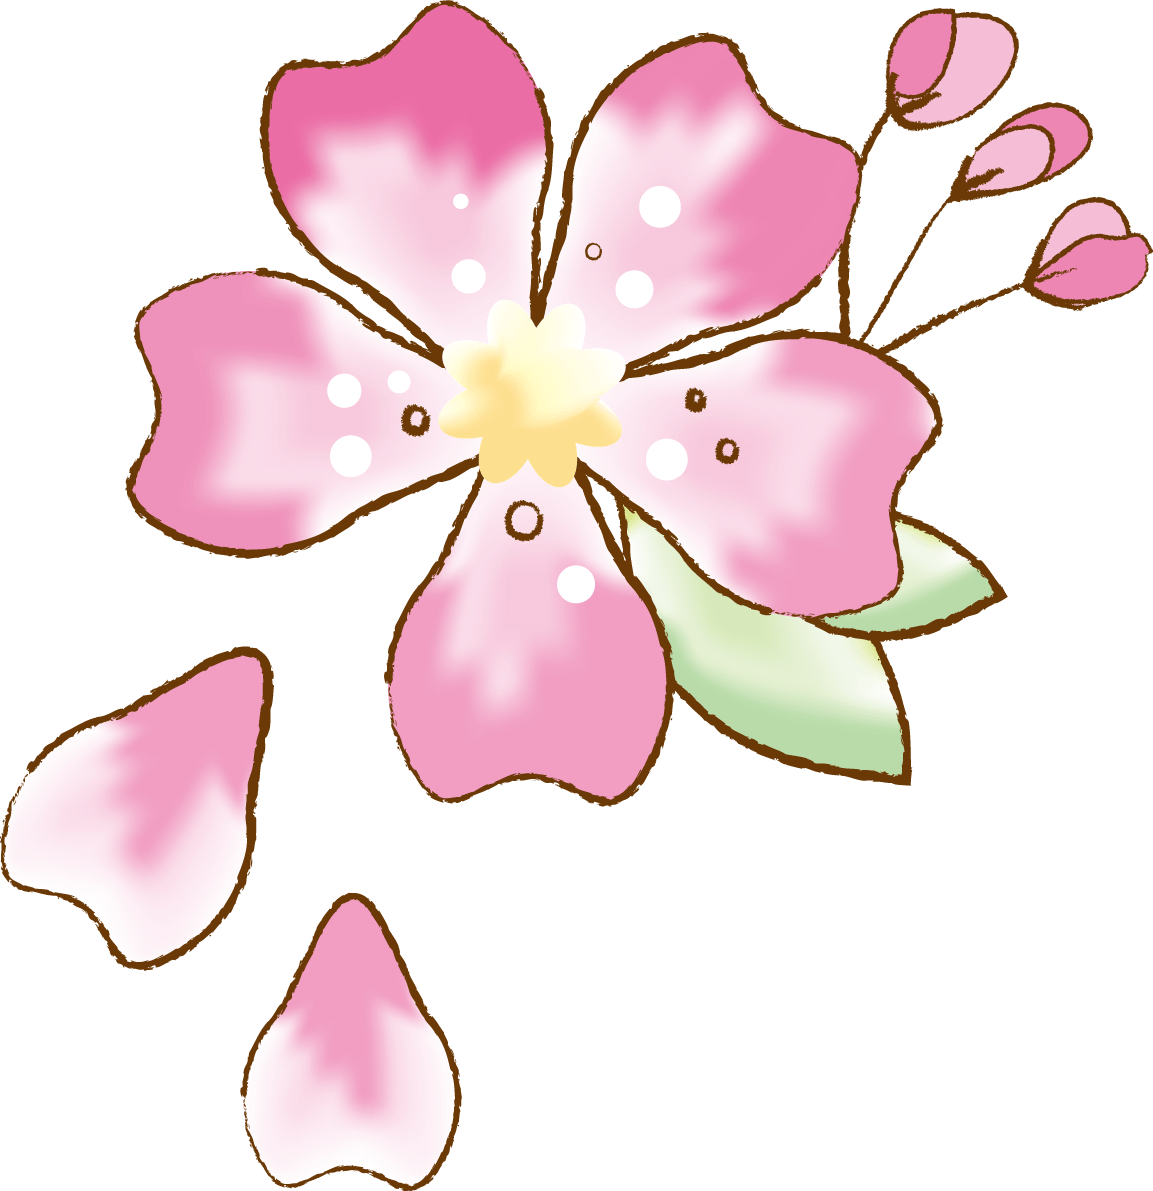 かわいい桜 春の花びらイラスト 水彩 イラスト素材 超多くの無料かわいいイラスト素材